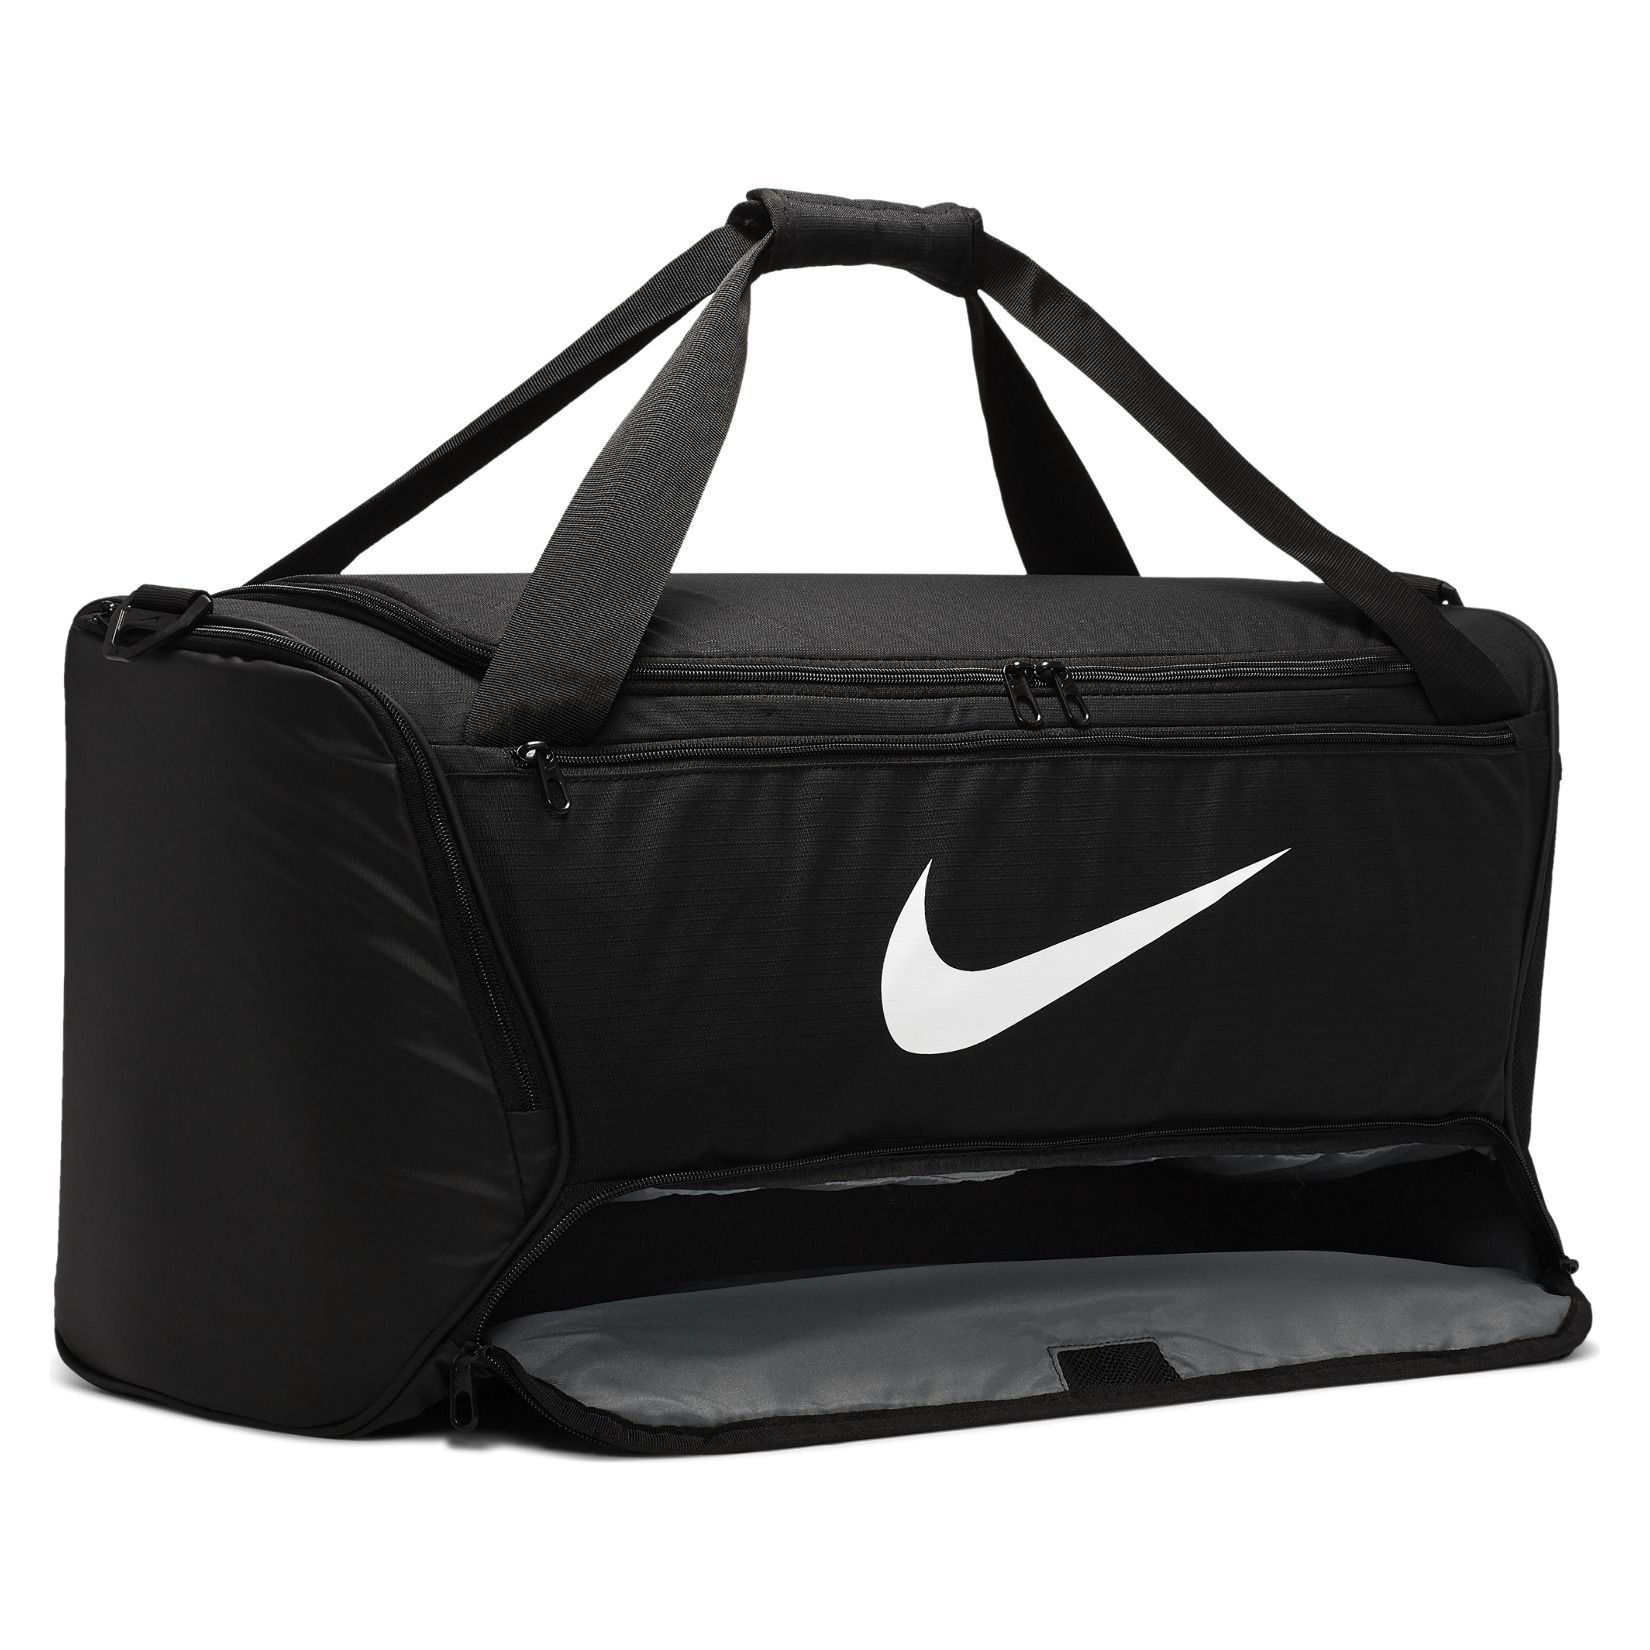 Nike Brasilia M Training Duffel Bag (Medium)